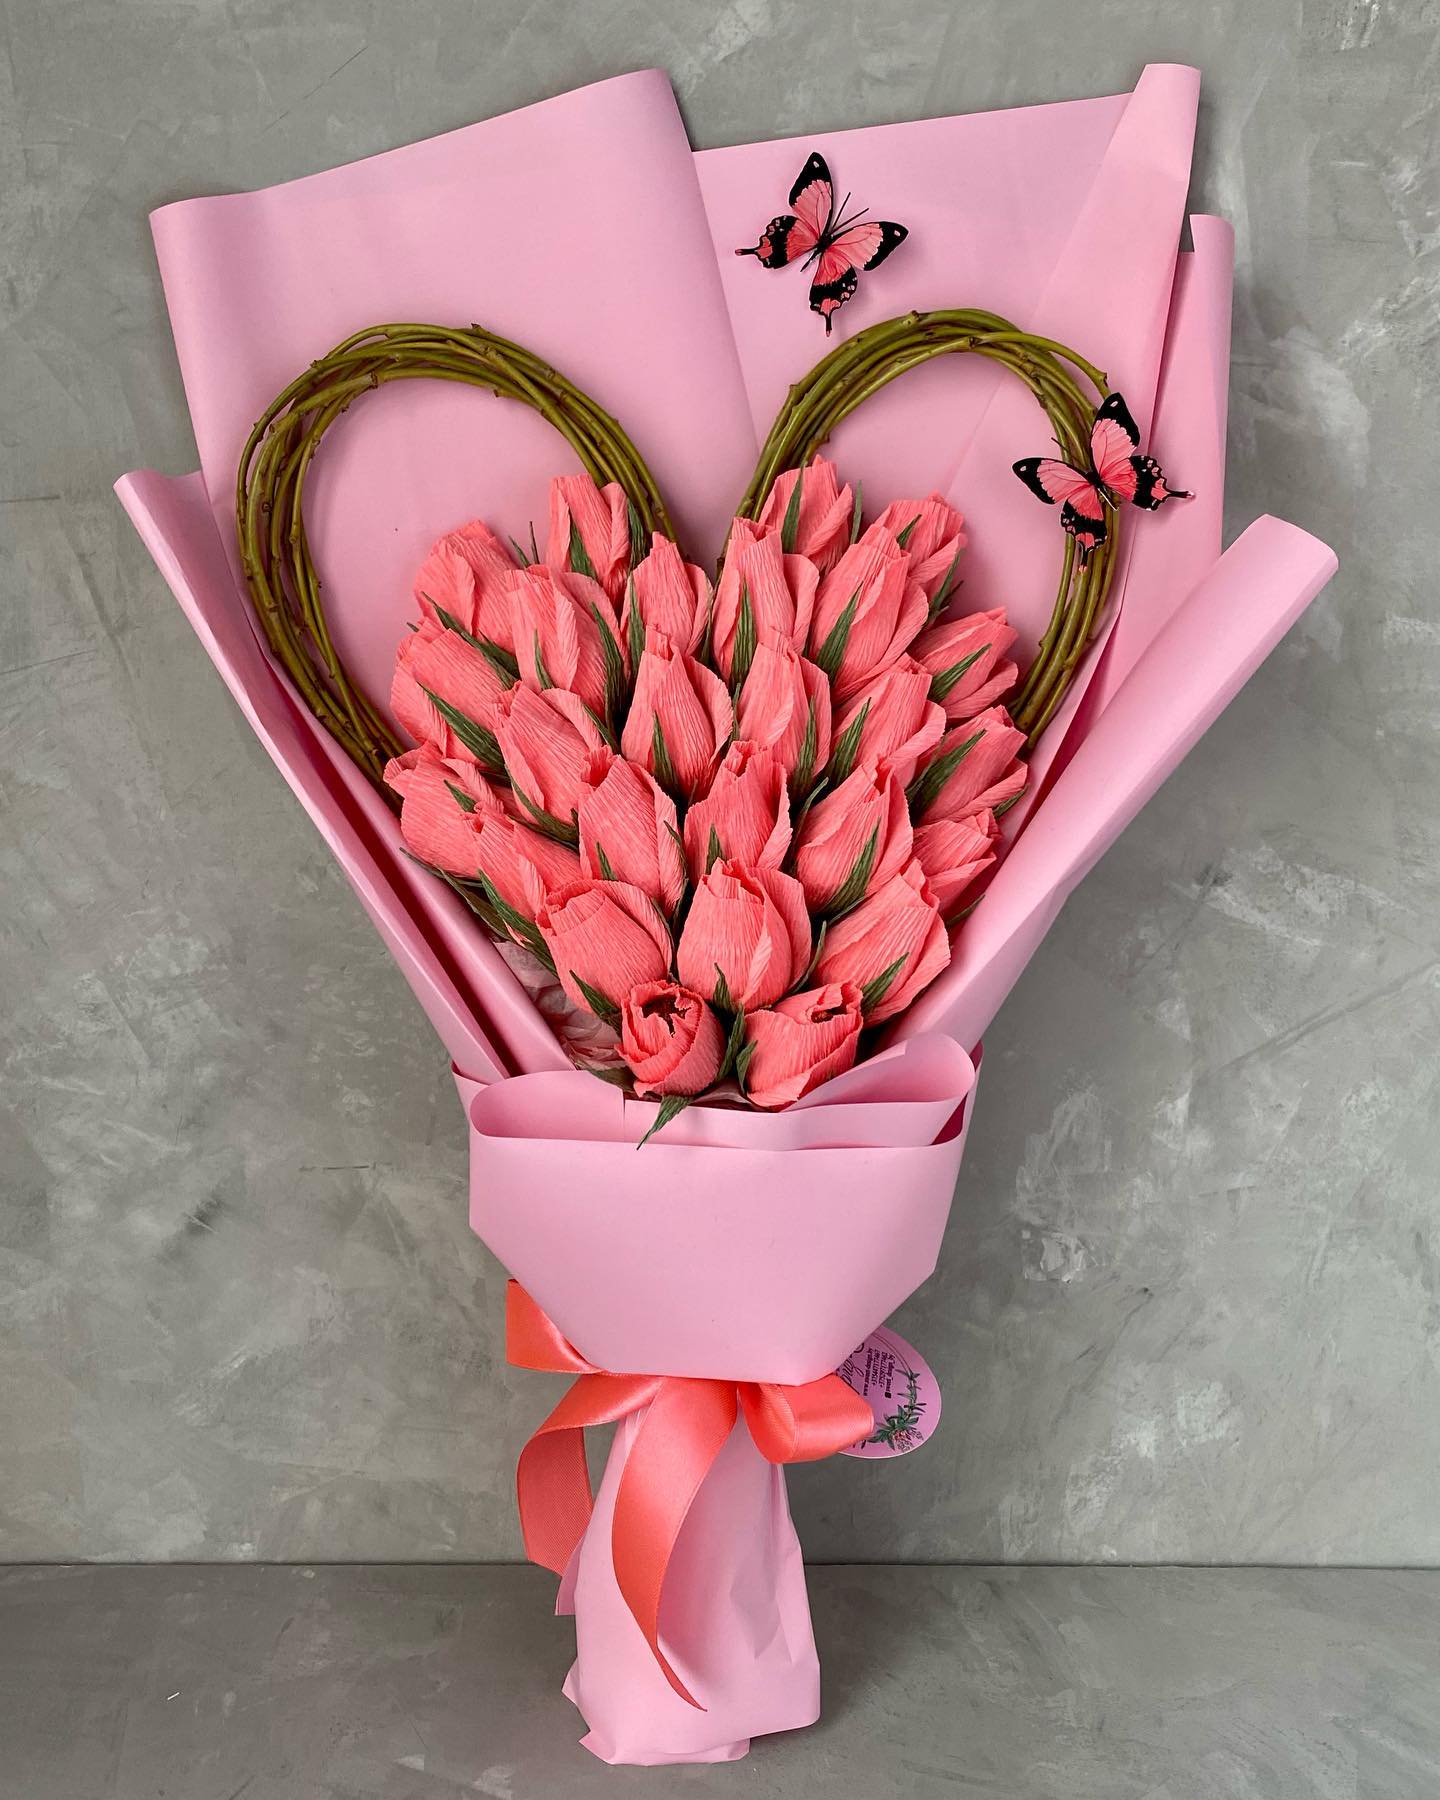 В такую пасмурную погоду просто необходимо радовать любимых яркими эффектными букетами! 🥰
Мы поможем вам сказать о своих чувствах при помощи романтической цветочной композиции с вкусными конфетами 🌺
——————————————
Для заказа букета, свяжитесь с нами по телефонам:
📱+375297177462 (Viber, WhatsApp, Telegram)
📱+375447177467 (Viber, WhatsApp)
📩 Direct

🖥 Каталог с ценами - на сайте www.sweet-design.by

🚘 Доставка по Минску (6-10 BYN)

.
.
.
.
.
#цветывминске #подаркиминск #букетыминск #цветыминск #минскподарки #доставкабукетовминск #букетназаказминск #заказатьбукетминск #цветысдоставкойминск #flowersminsk #букетминск #цветывкоробкеминск #минскподарок #подарокминск #доставкацветовминск #вкусныйбукетминск #минскцветы #bouquetminsk #подарокдевушкеминск #подарокмамеминск #букетвминске #купитьбукетминск #розыминск #букетизконфетминск #тюльпаныминск #bouquetminsk #заказатьцветыминск
#букетизконфет #букетыизконфет #сладкийбукетминск